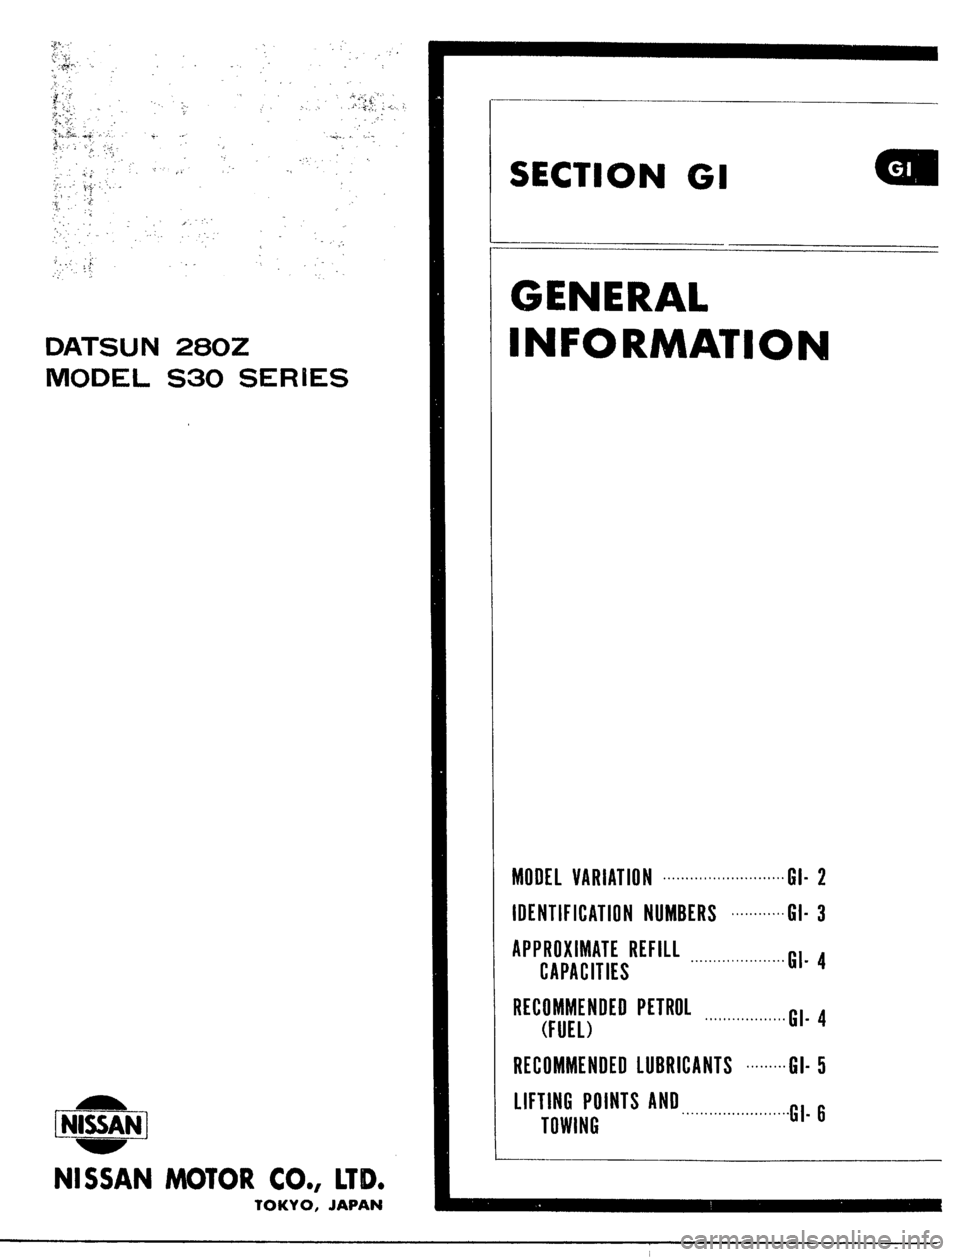 DATSUN 510 1979  Service Repair Manual 